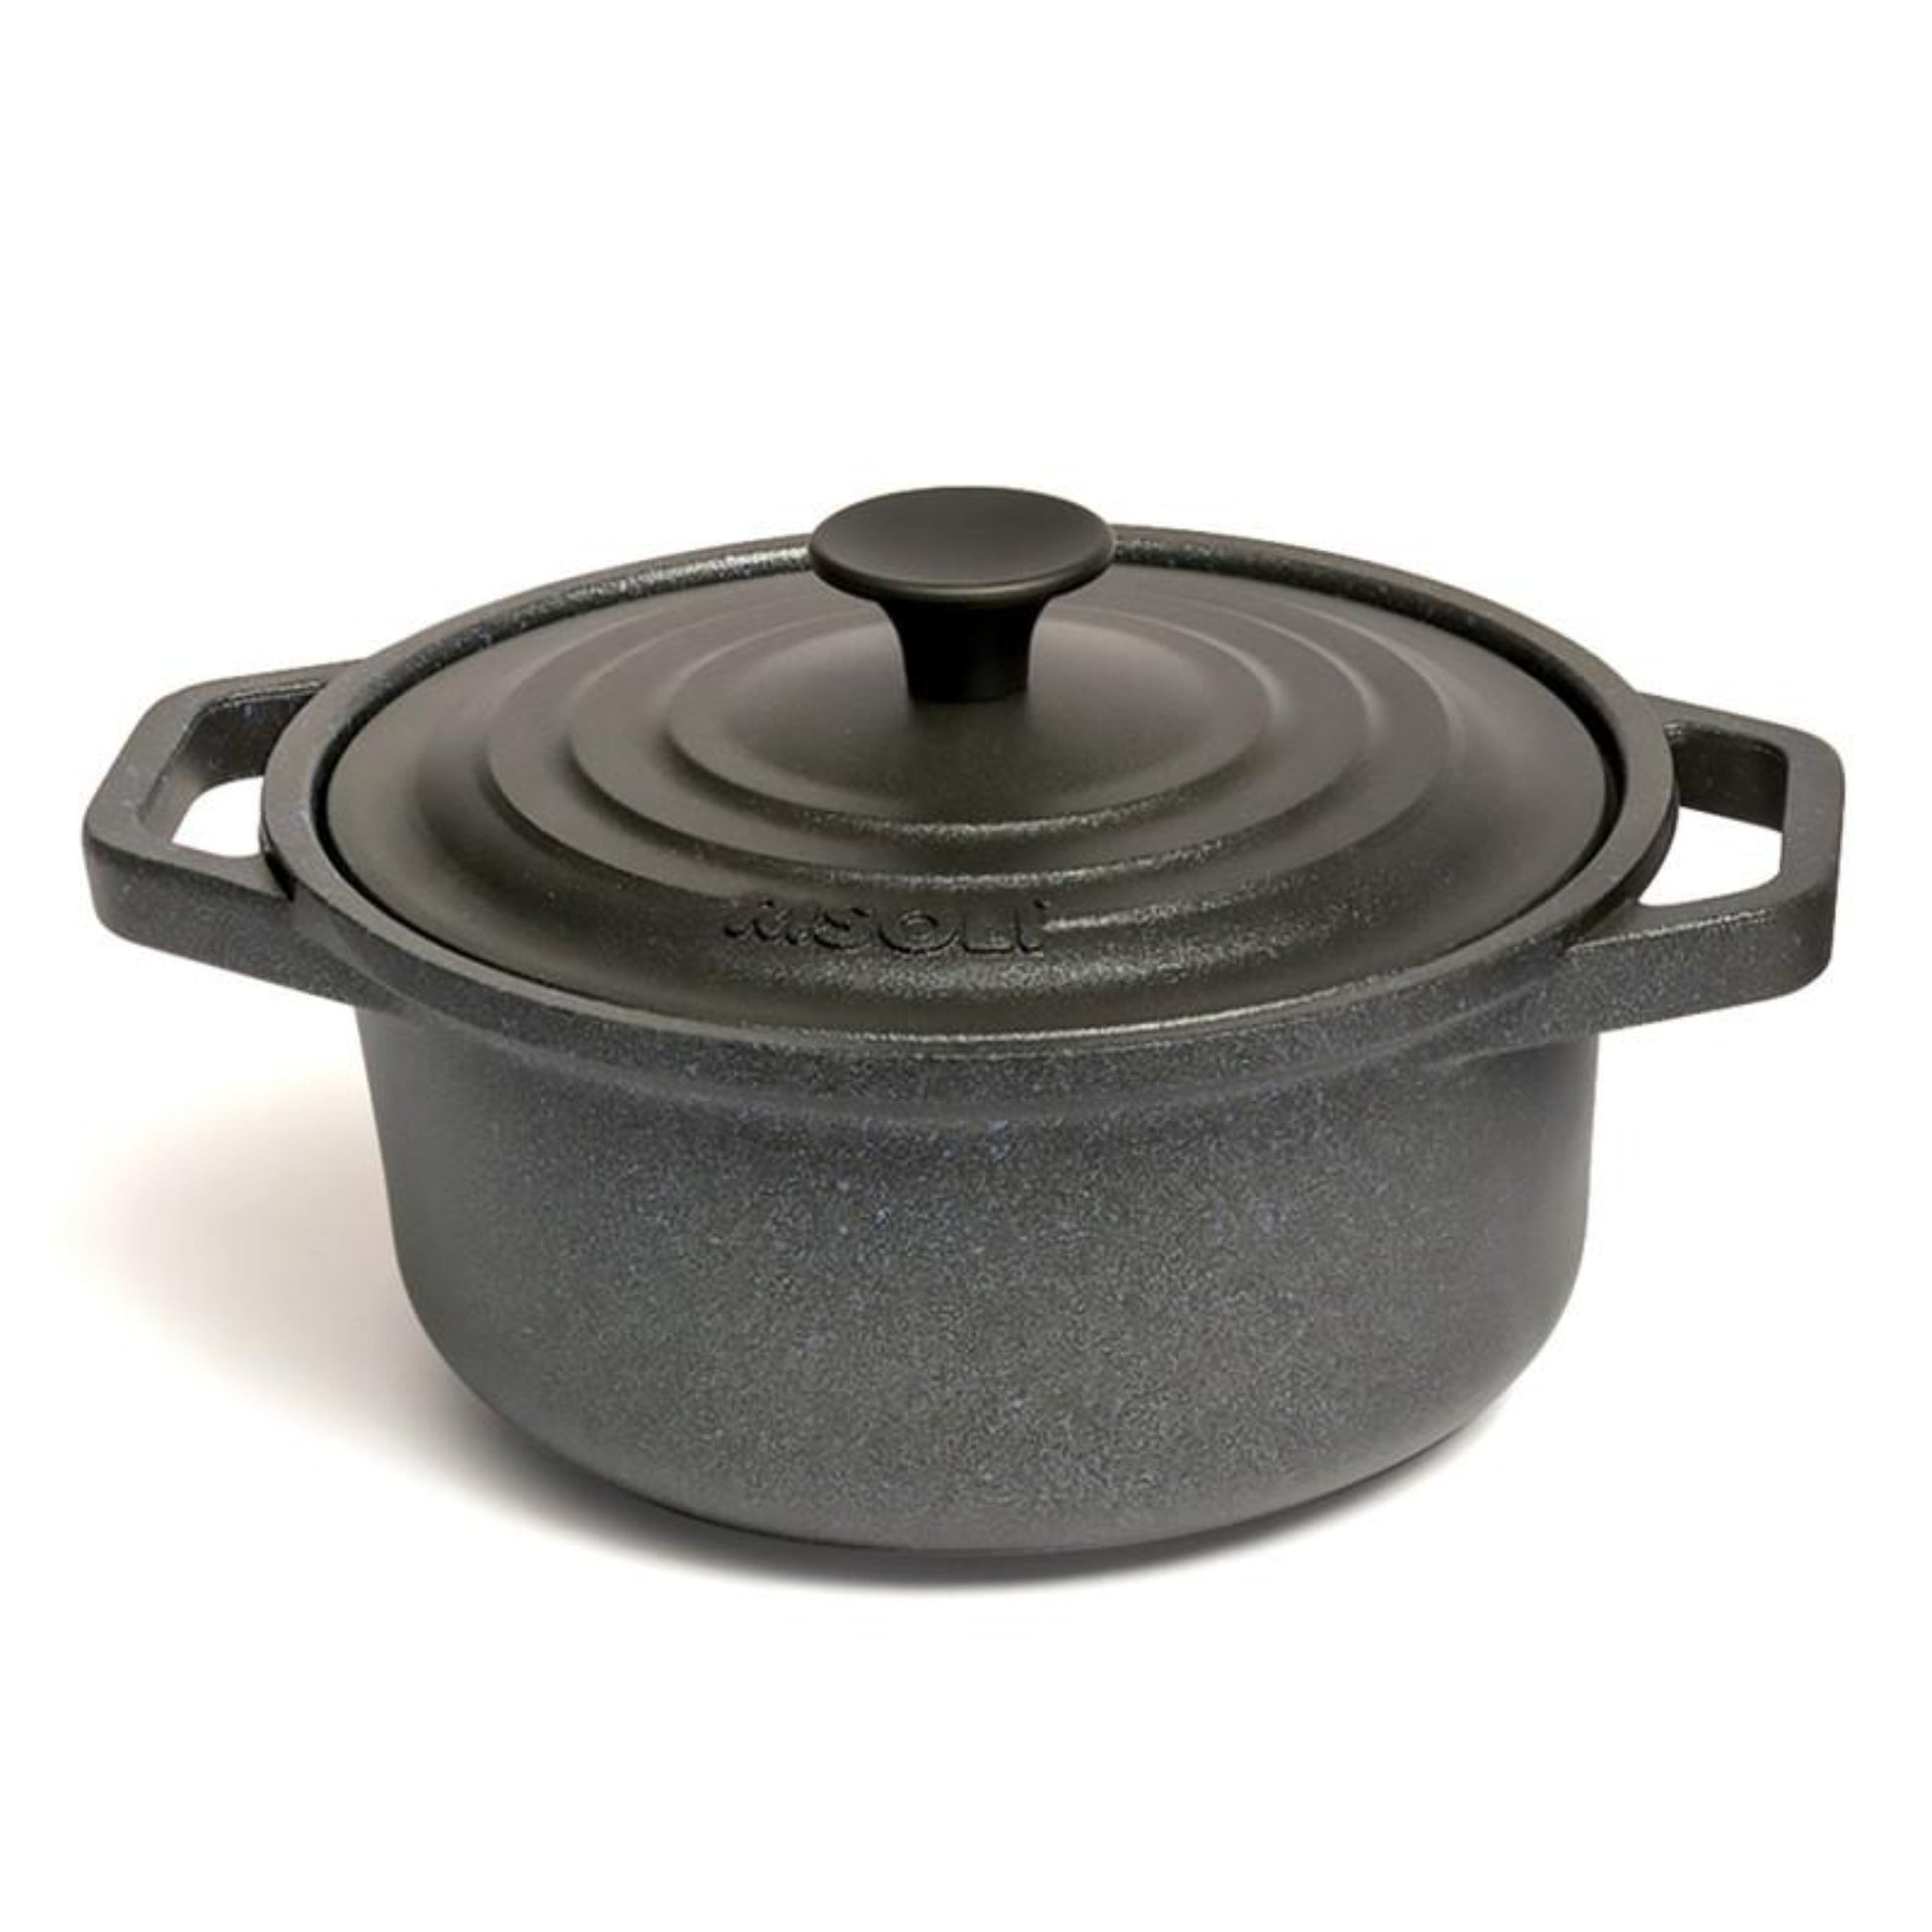 Risoli Granito Pot with Aluminium Cover 28 cm - Black - 44000339